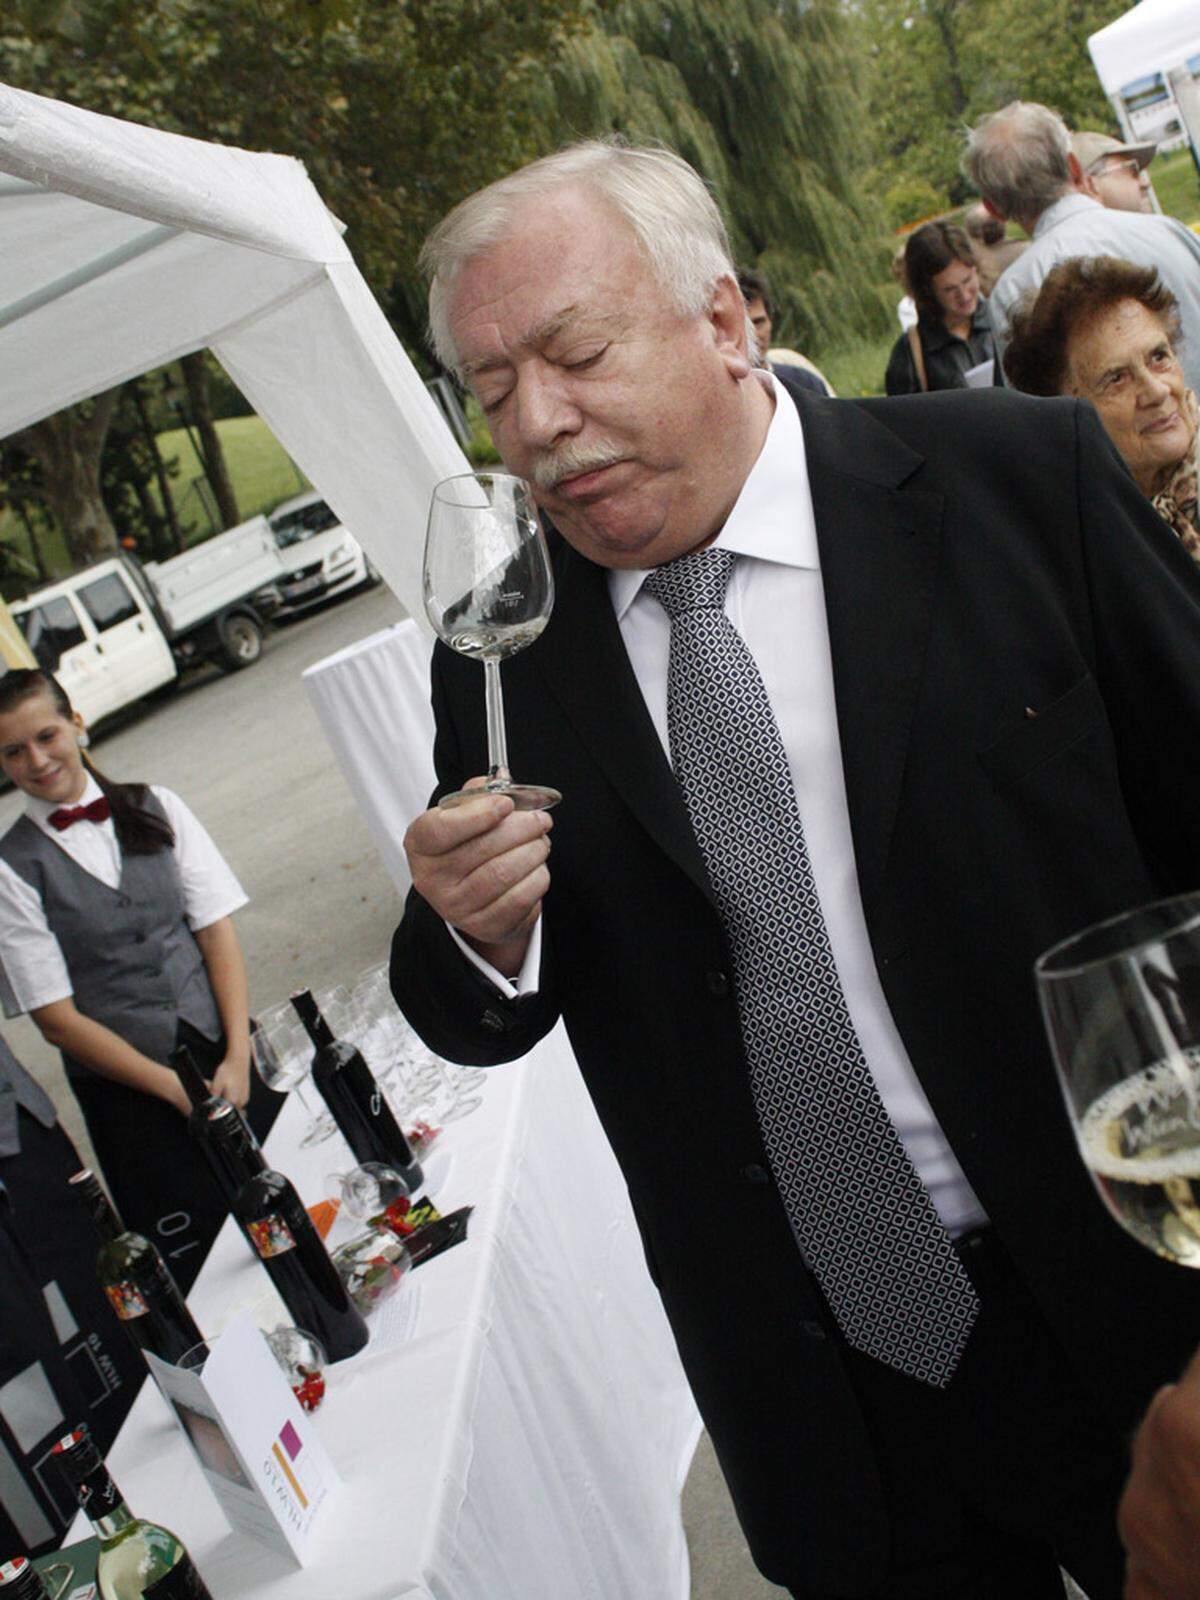 "Das Weingut Cobenzl ist unschlagbar, das weiß ich aber eh schon lang", sagt Häupl.